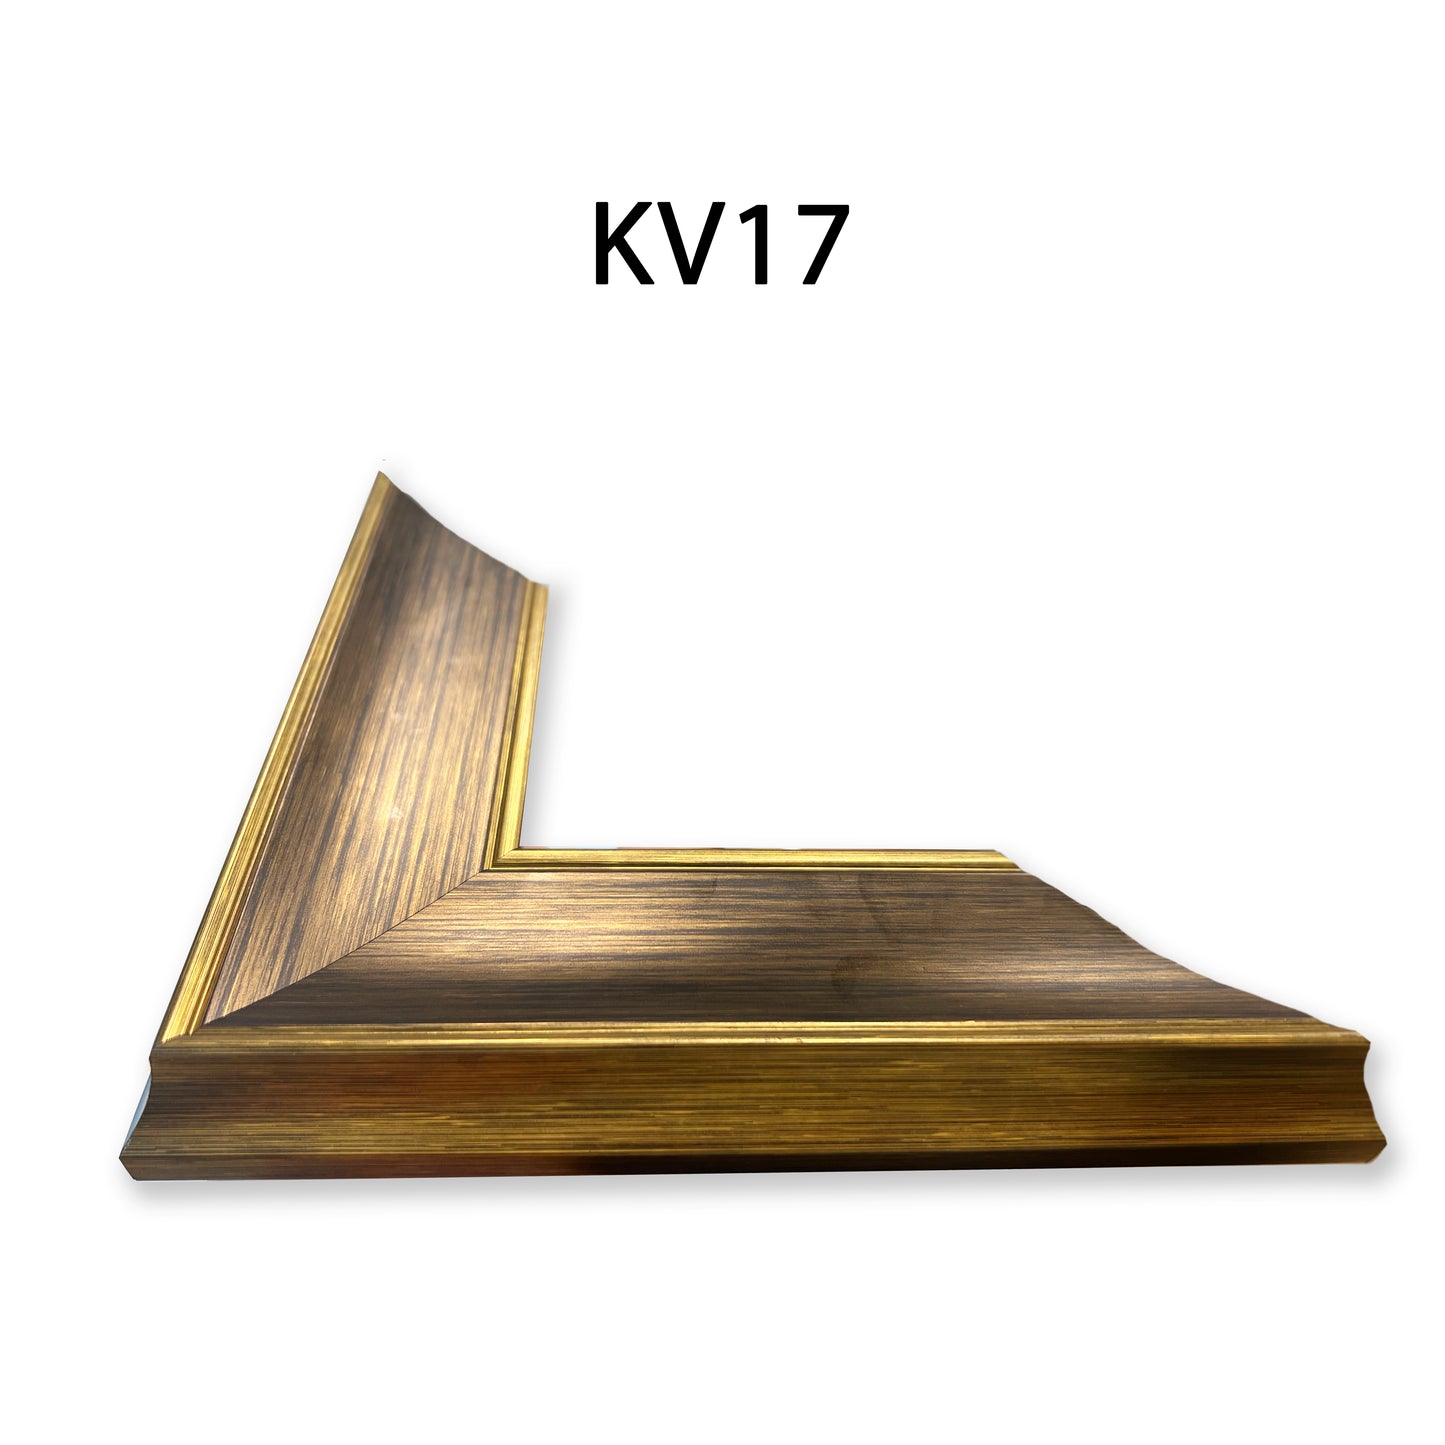 Khung Tranh Bản Vừa 5,5 cm - KV17